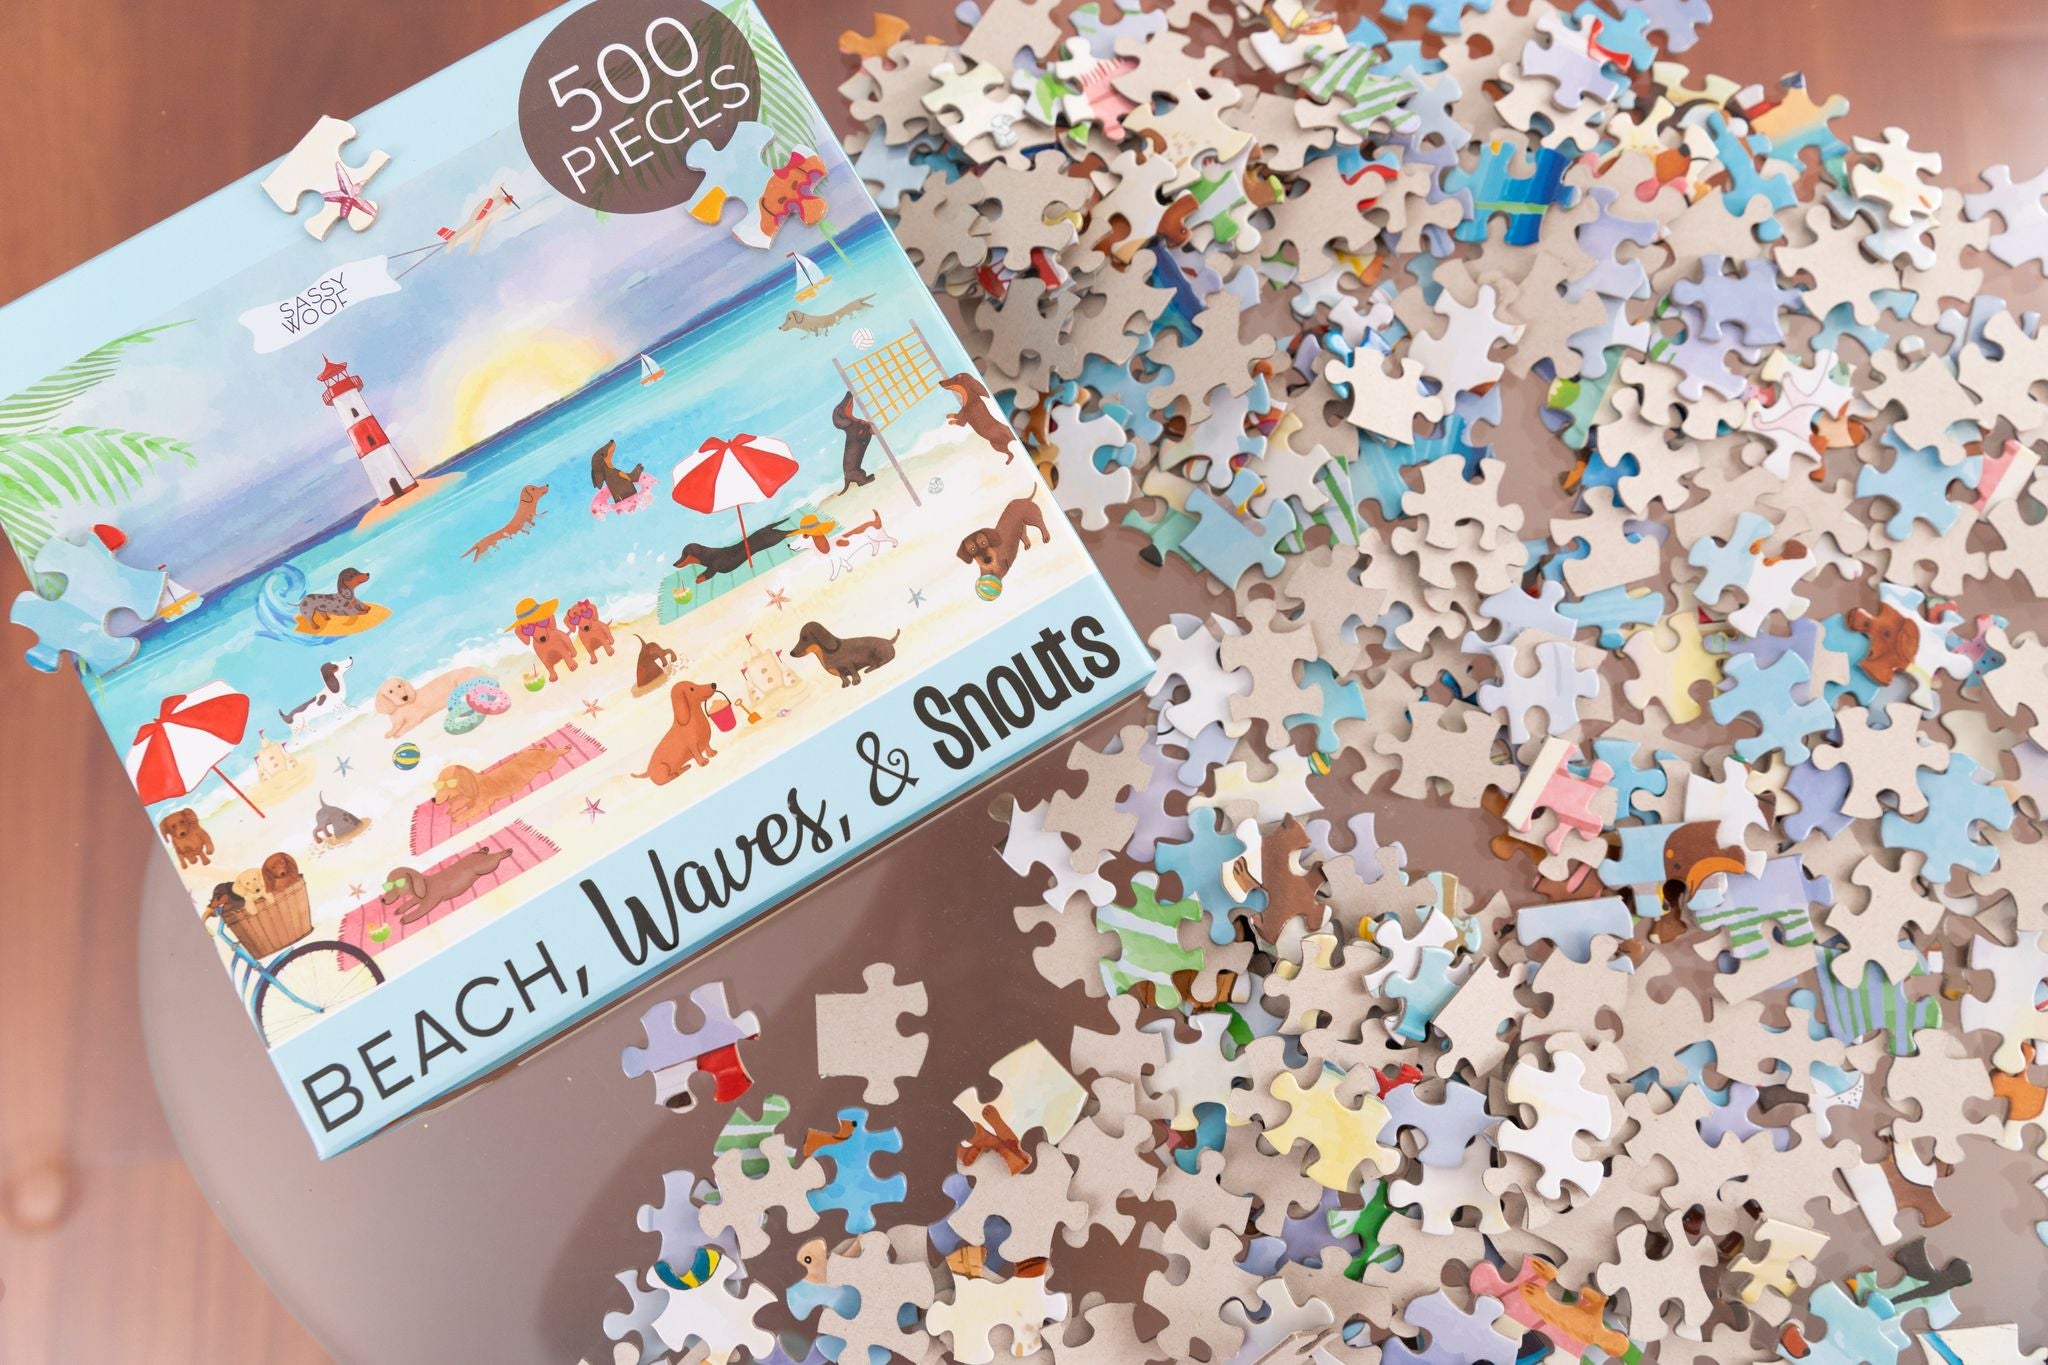 Beach, Waves, & Snouts Puzzle 500 Pieces - Henlo Pets